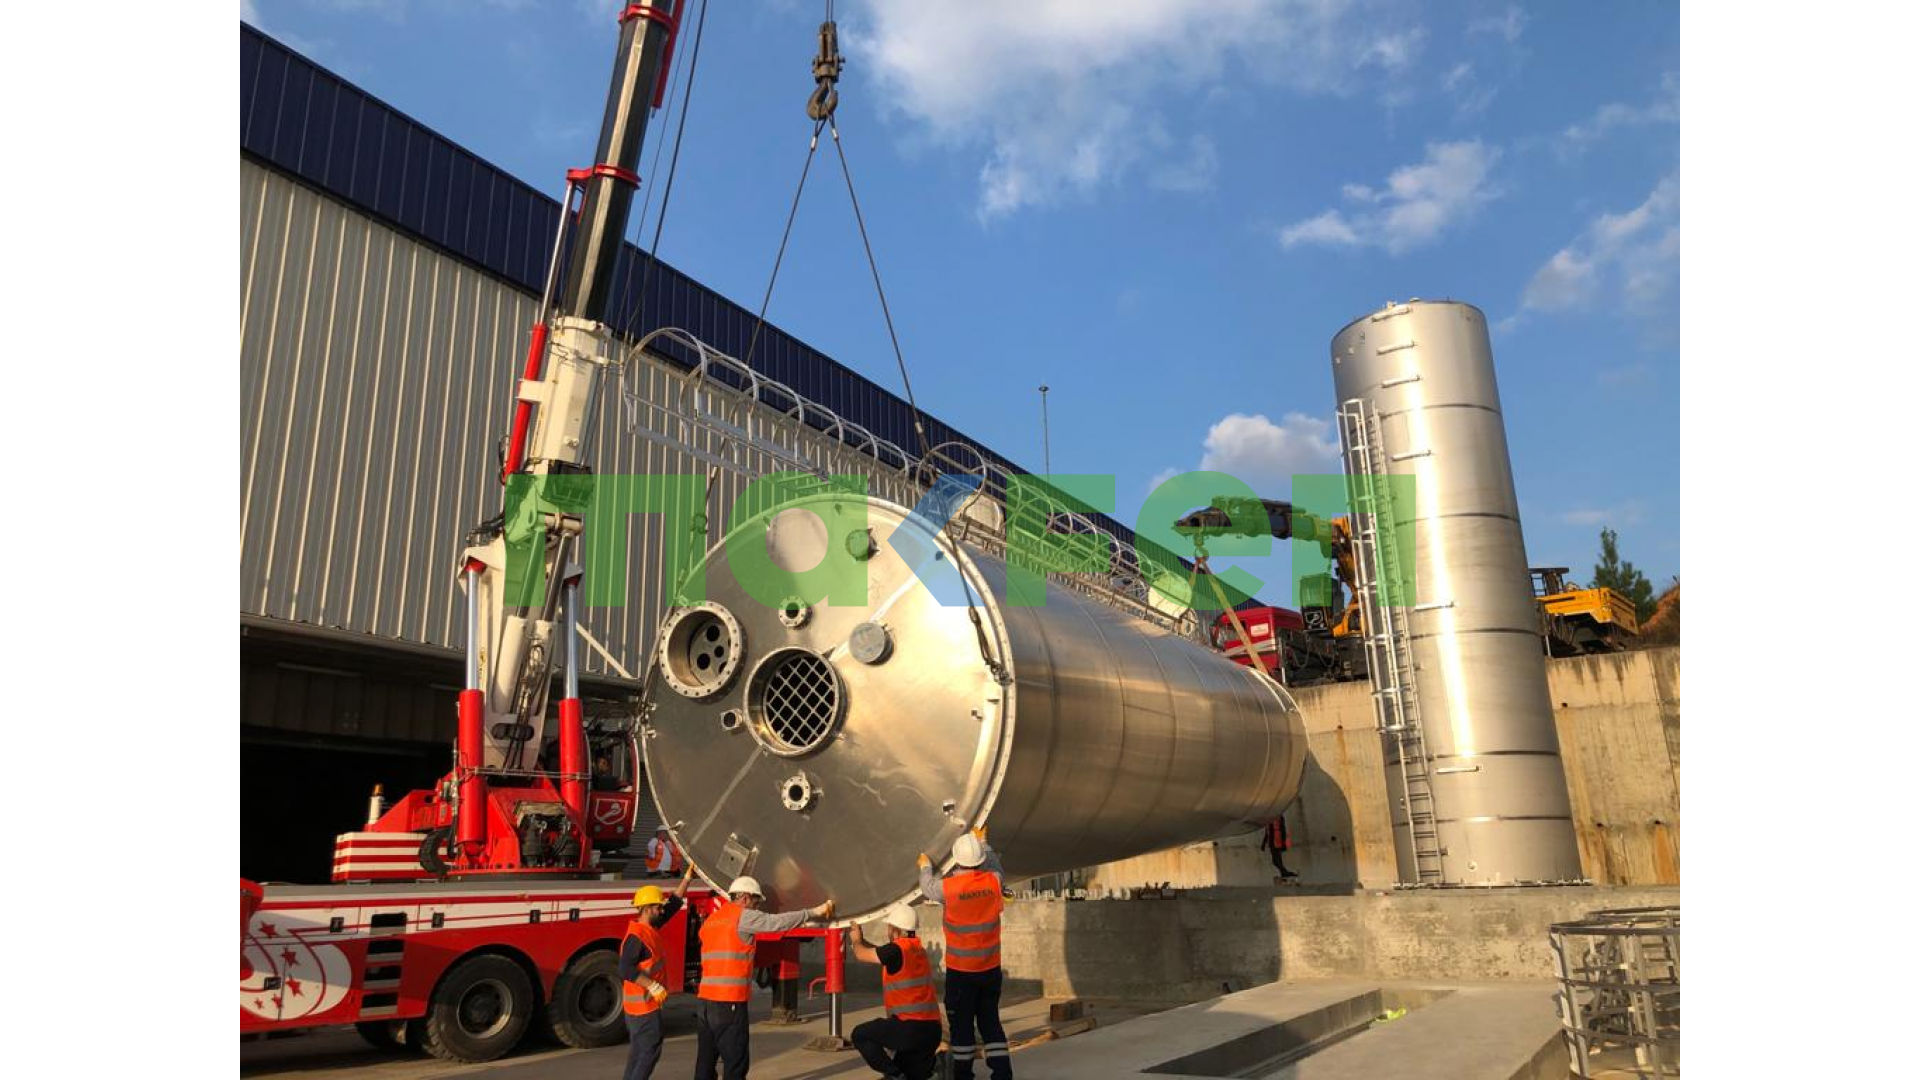 Makfen makine olarak anahtar teslim reaktör blender mikser hammadde stok tankları alüminyum paslanmaz silo imalatı tesis kurulum hizmetleri sunmaktayız.